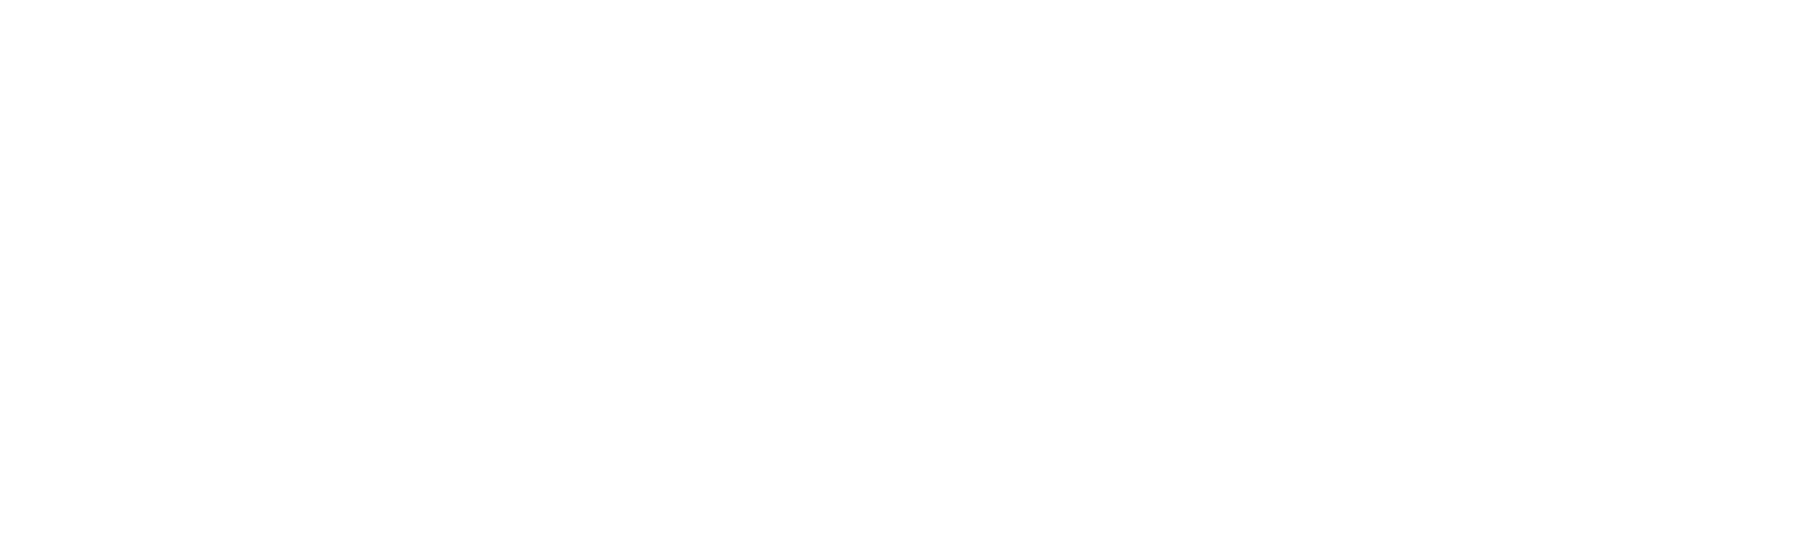 Amazon Web Services Logo (White)